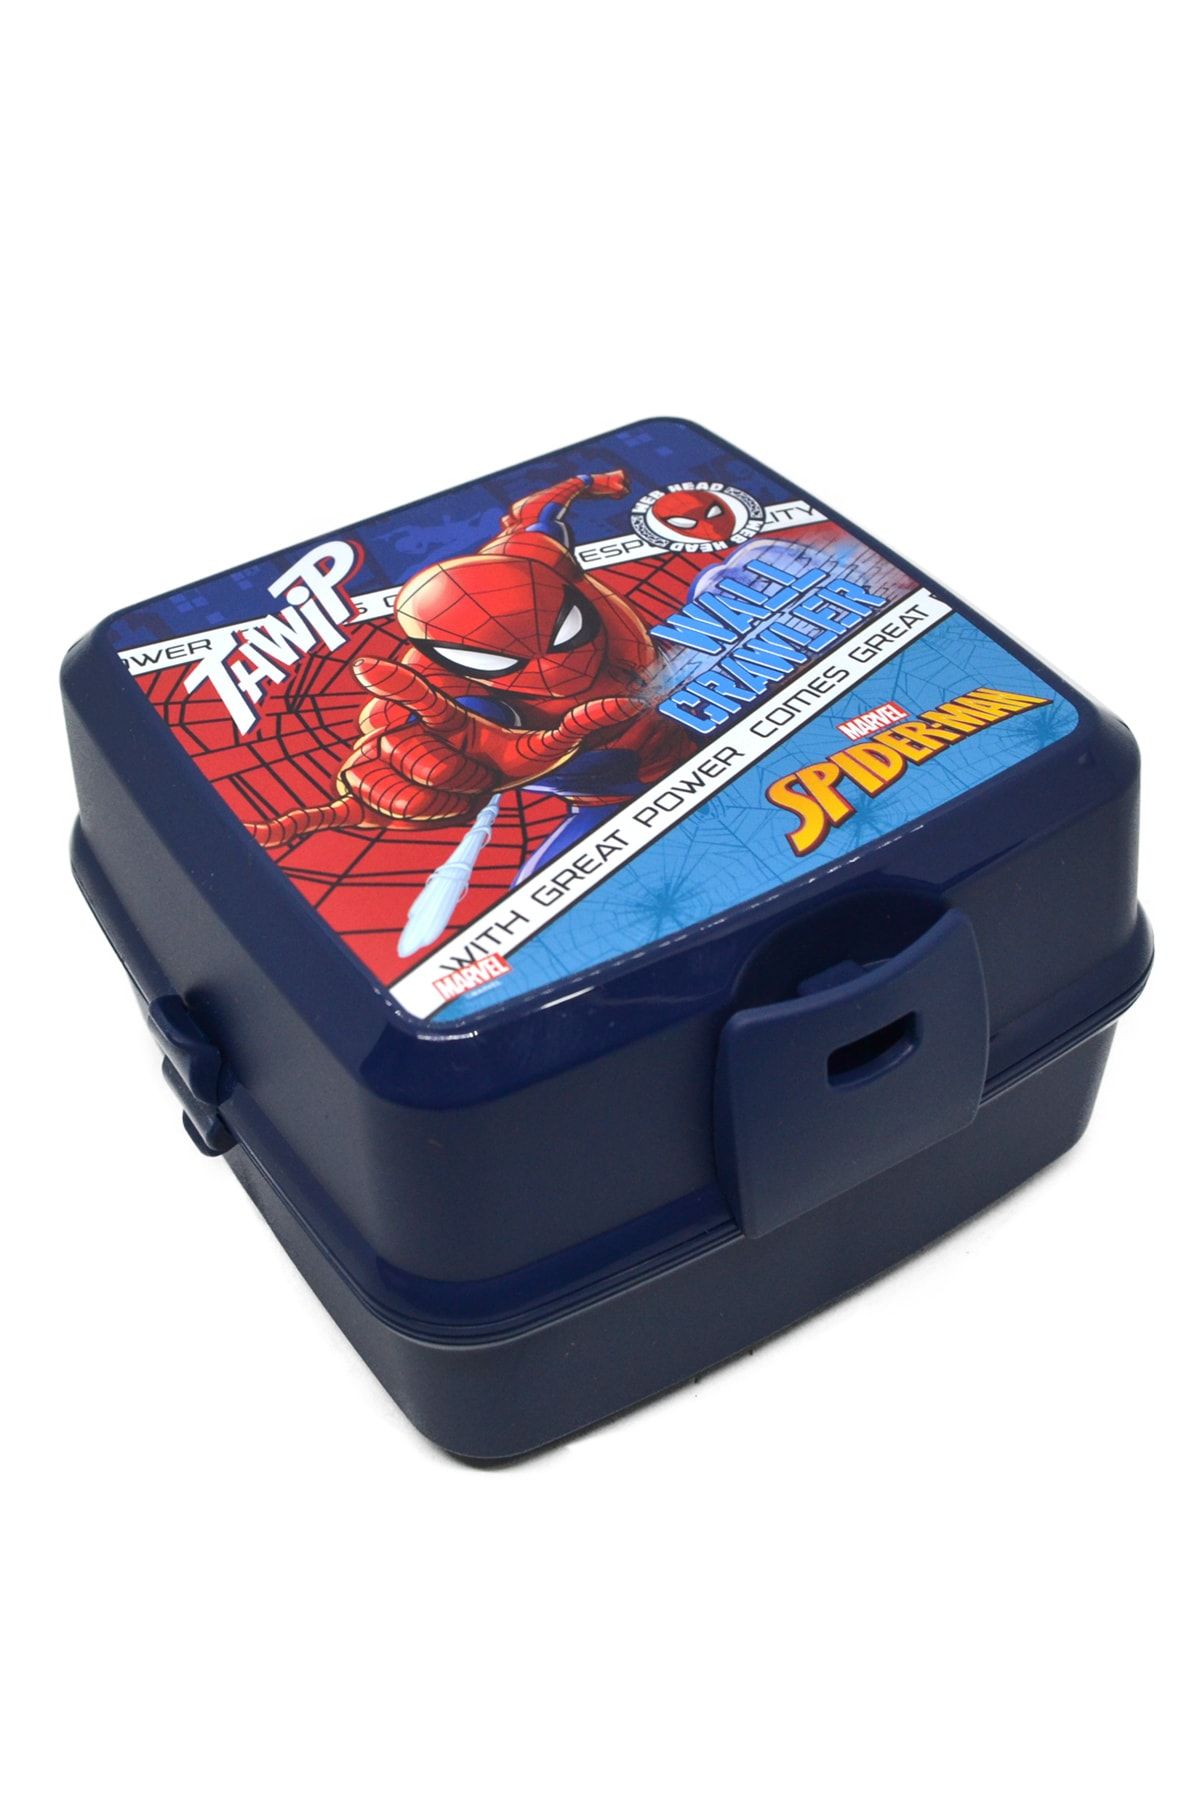 Hakan Çanta Spiderman Beslenme 3 Gözlü Çatal Kaşıklı